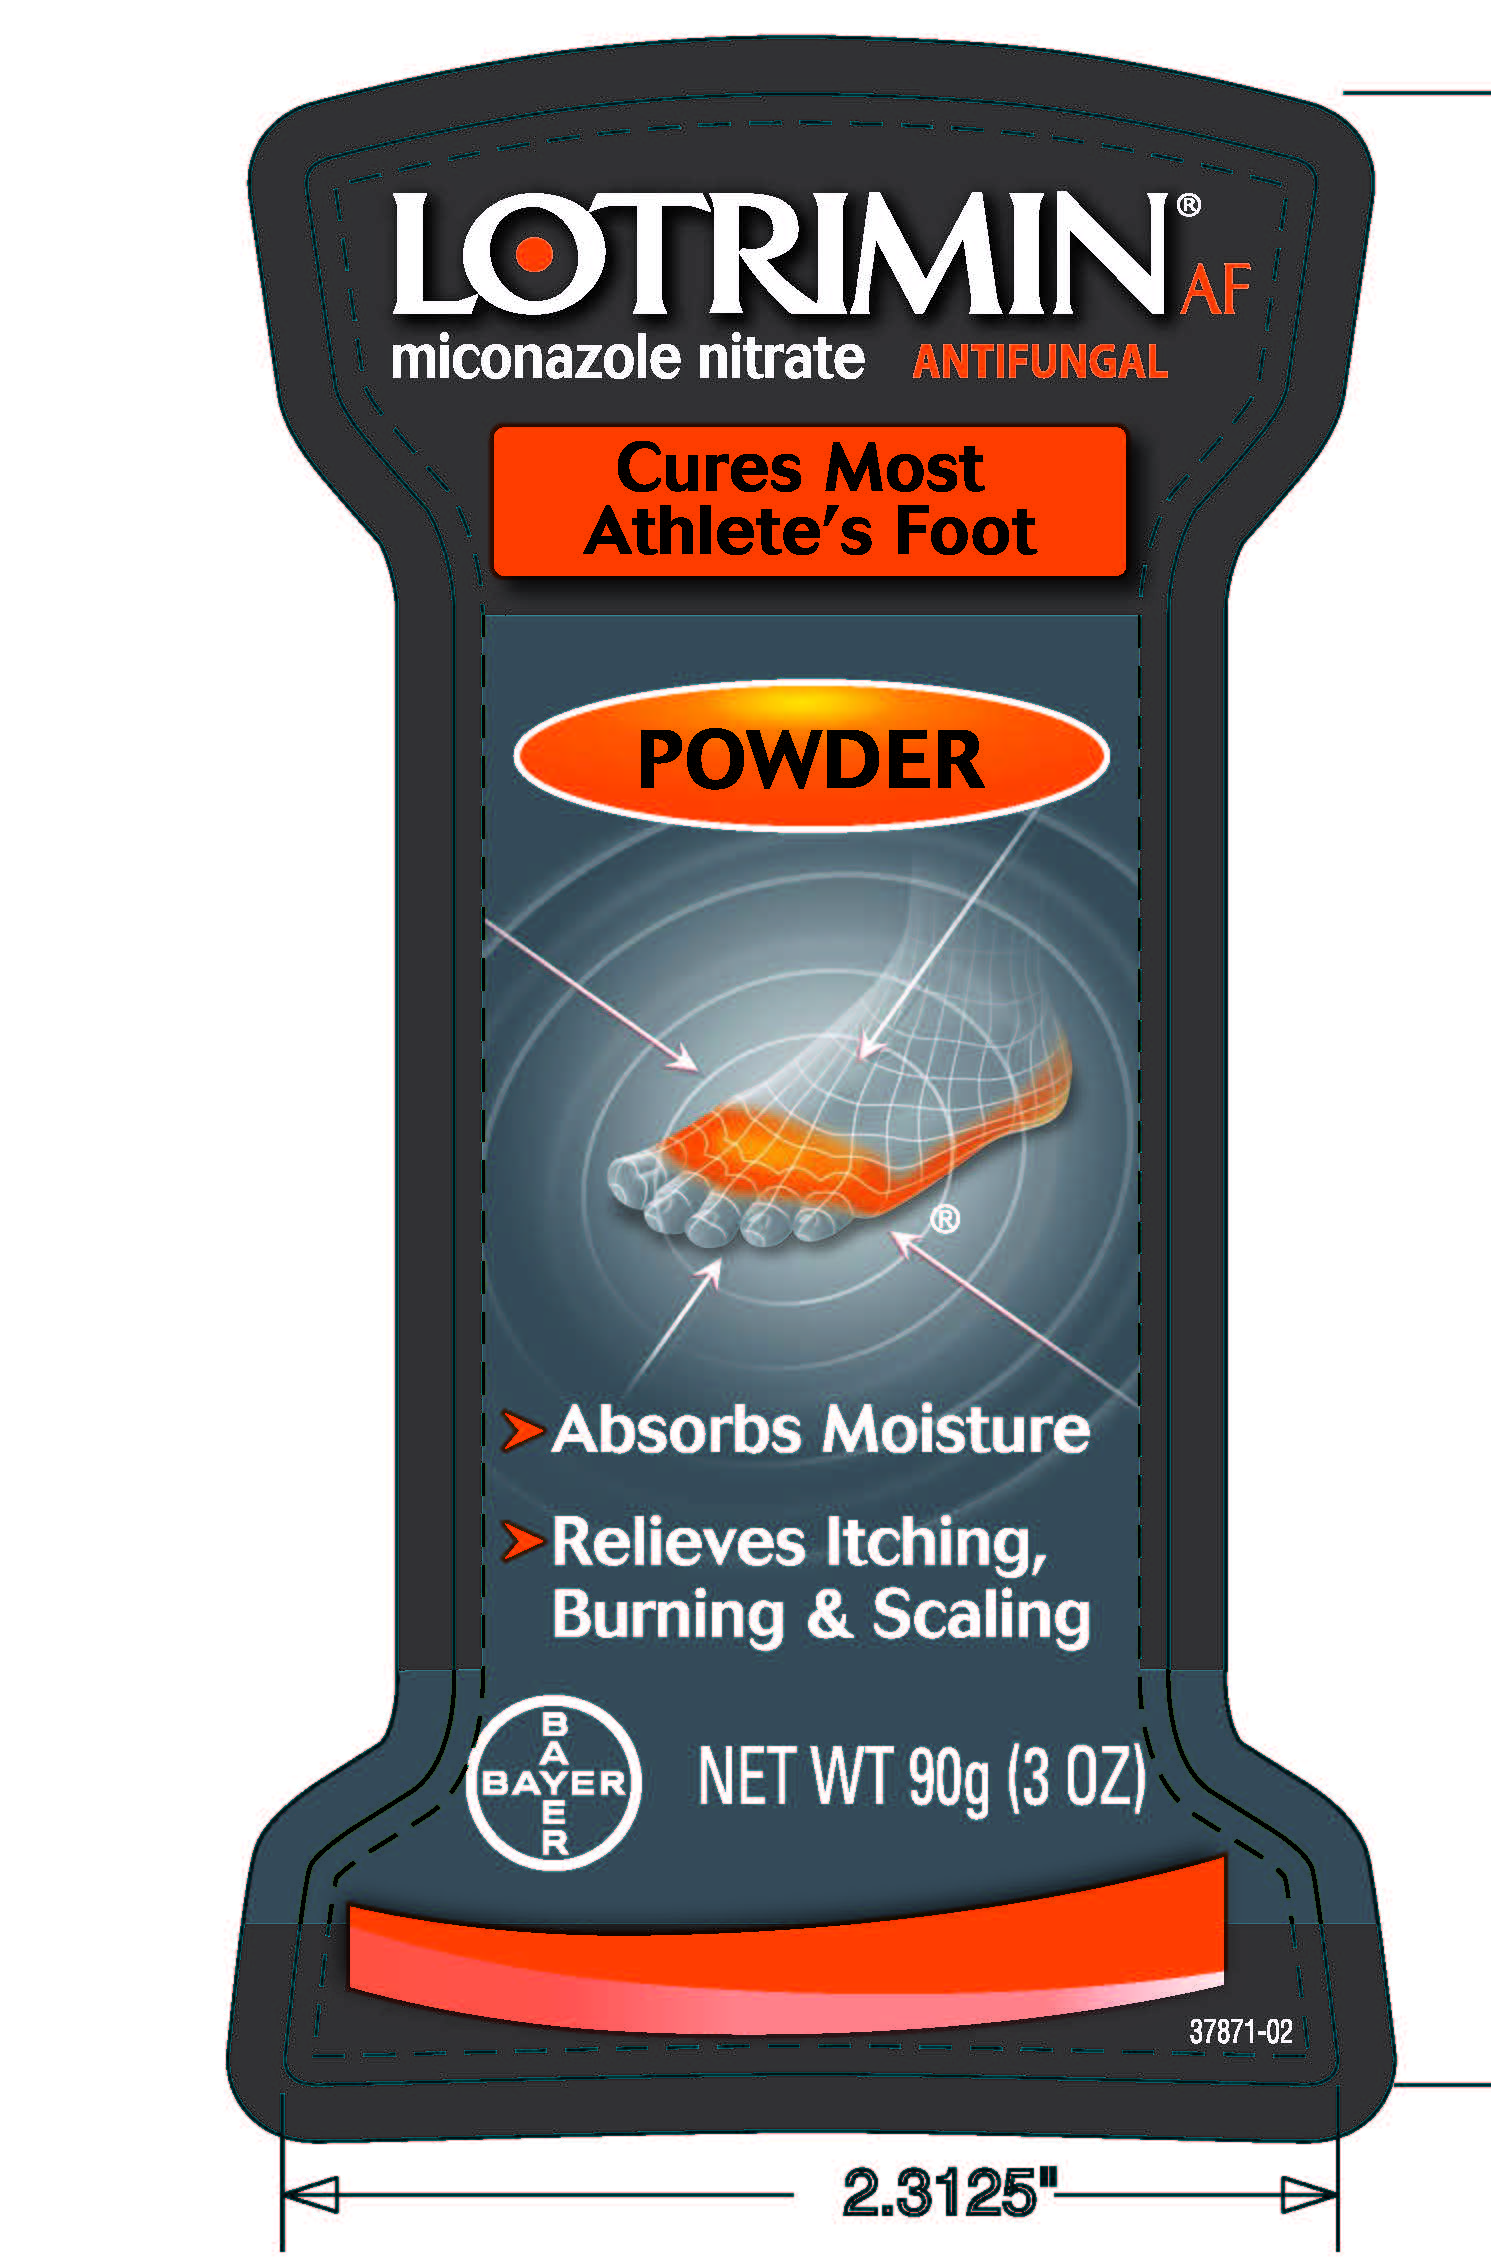 Lotrimin AF Powder front label